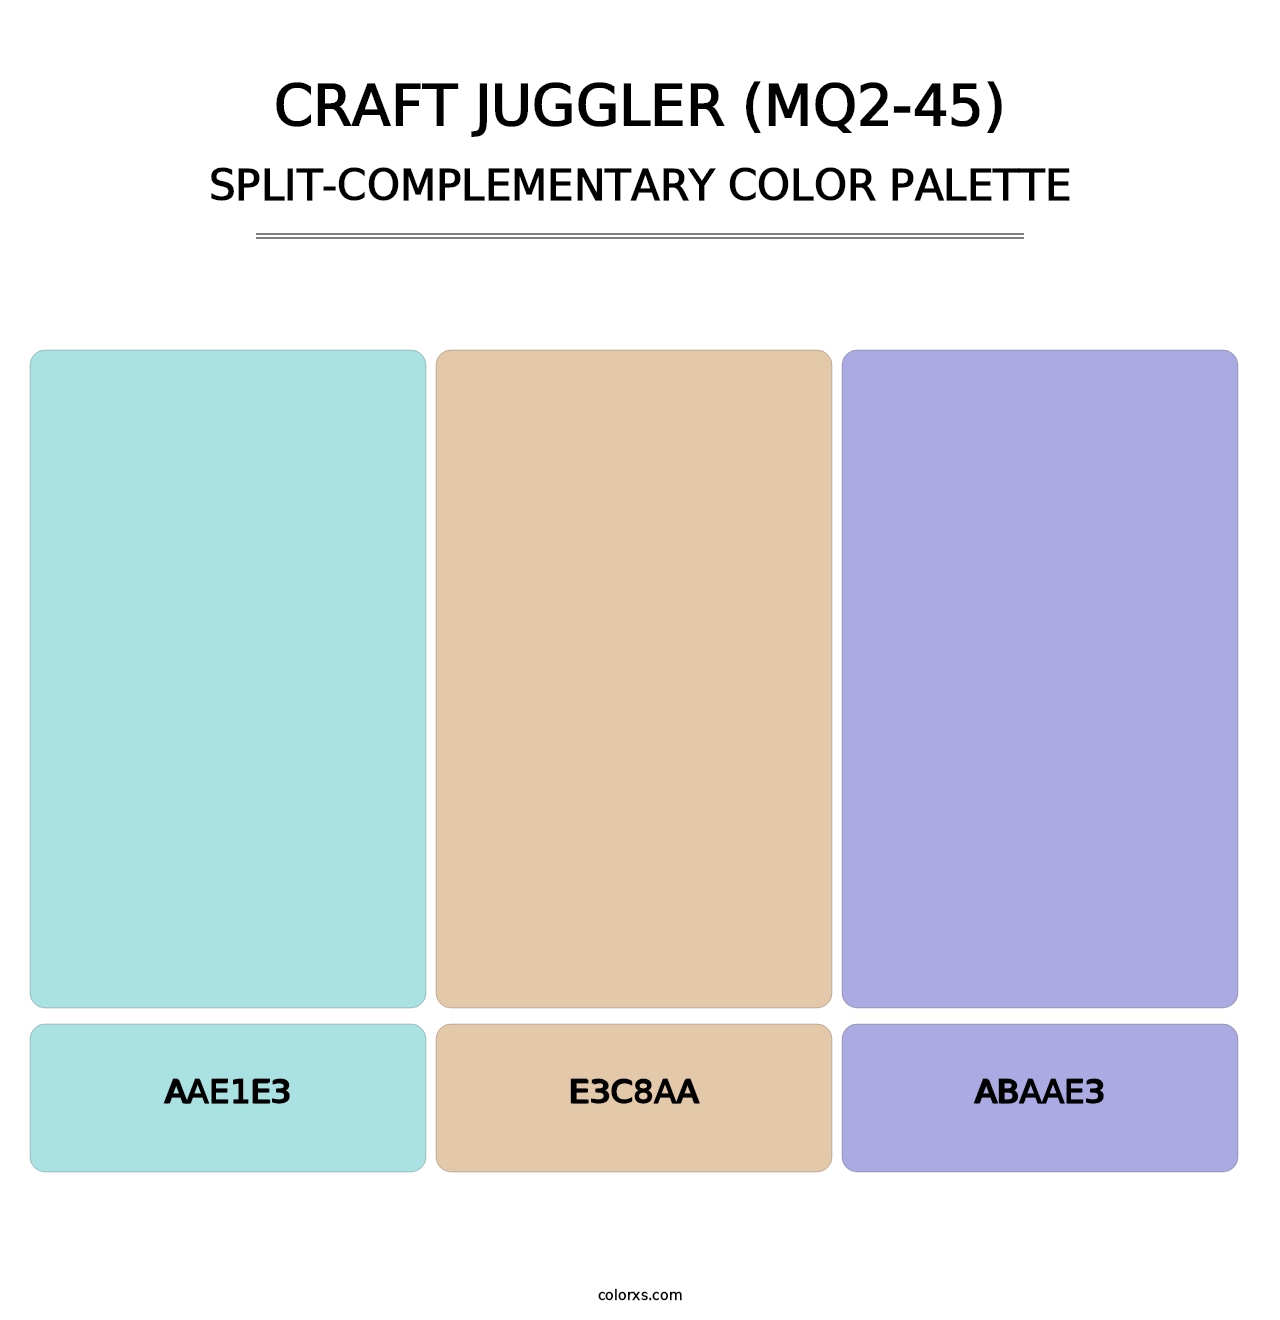 Craft Juggler (MQ2-45) - Split-Complementary Color Palette